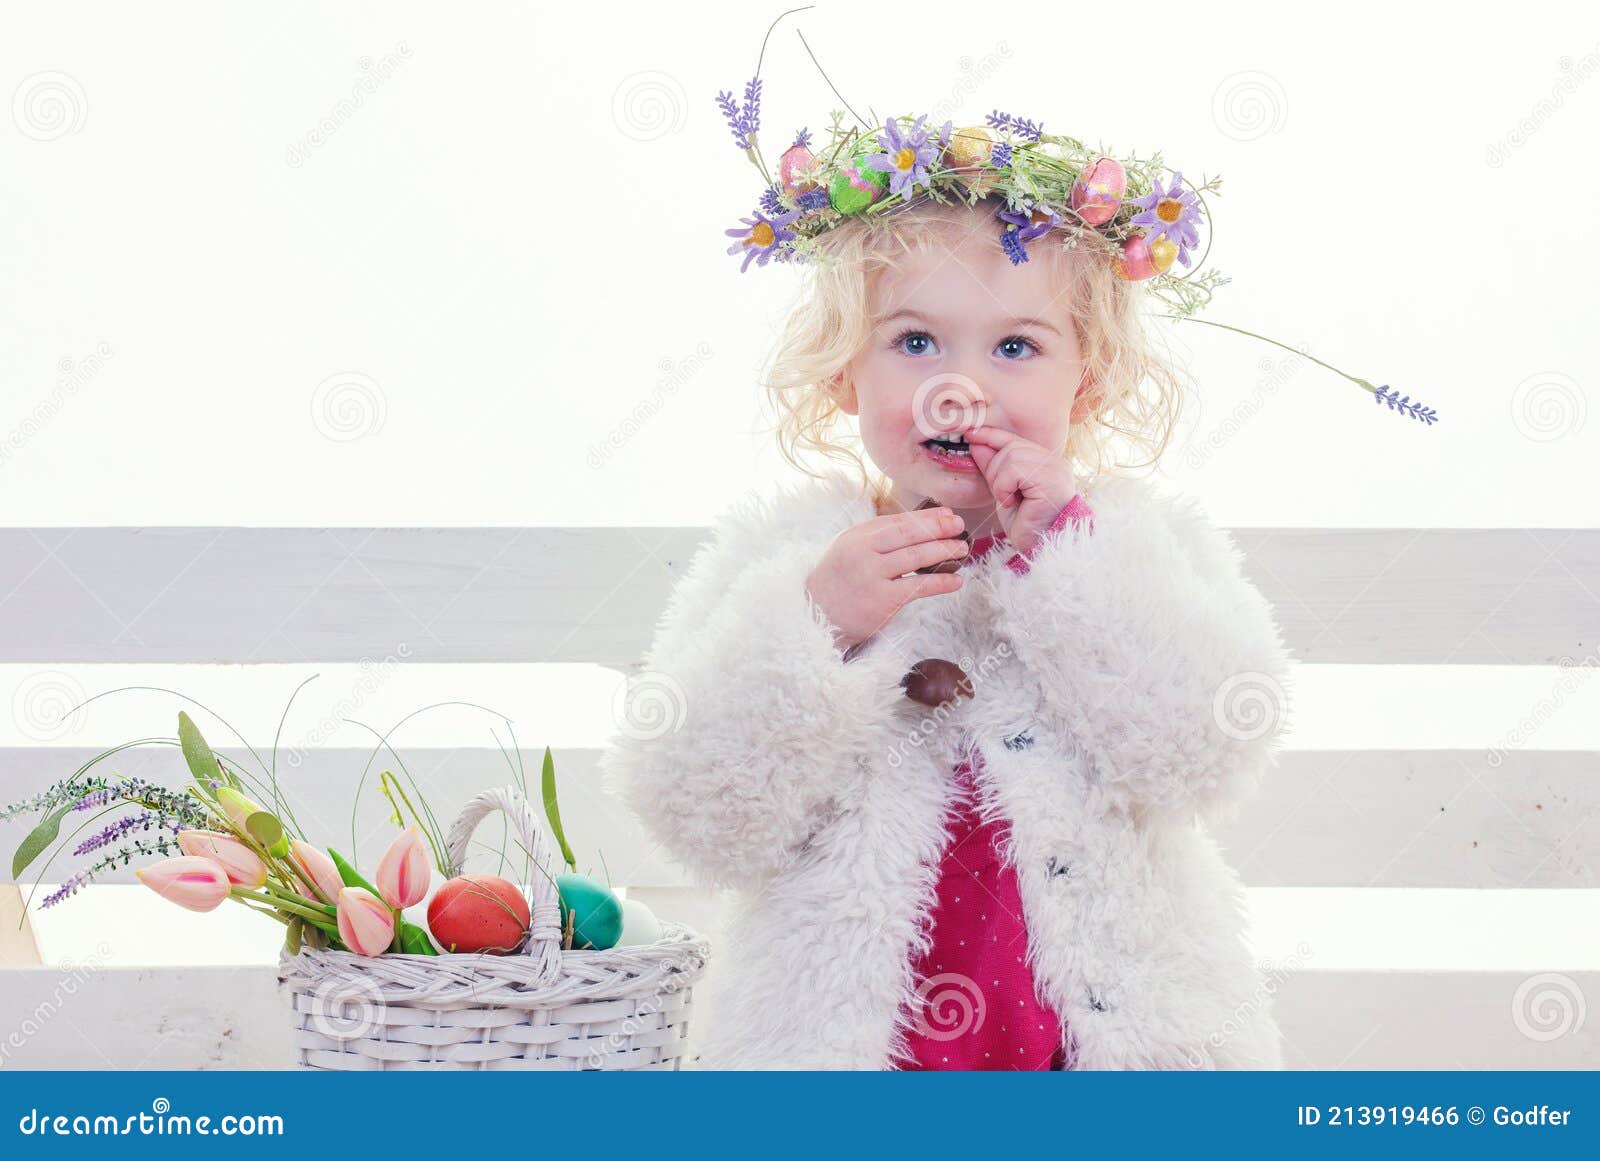 Easter hunt girl eggs and flower basket